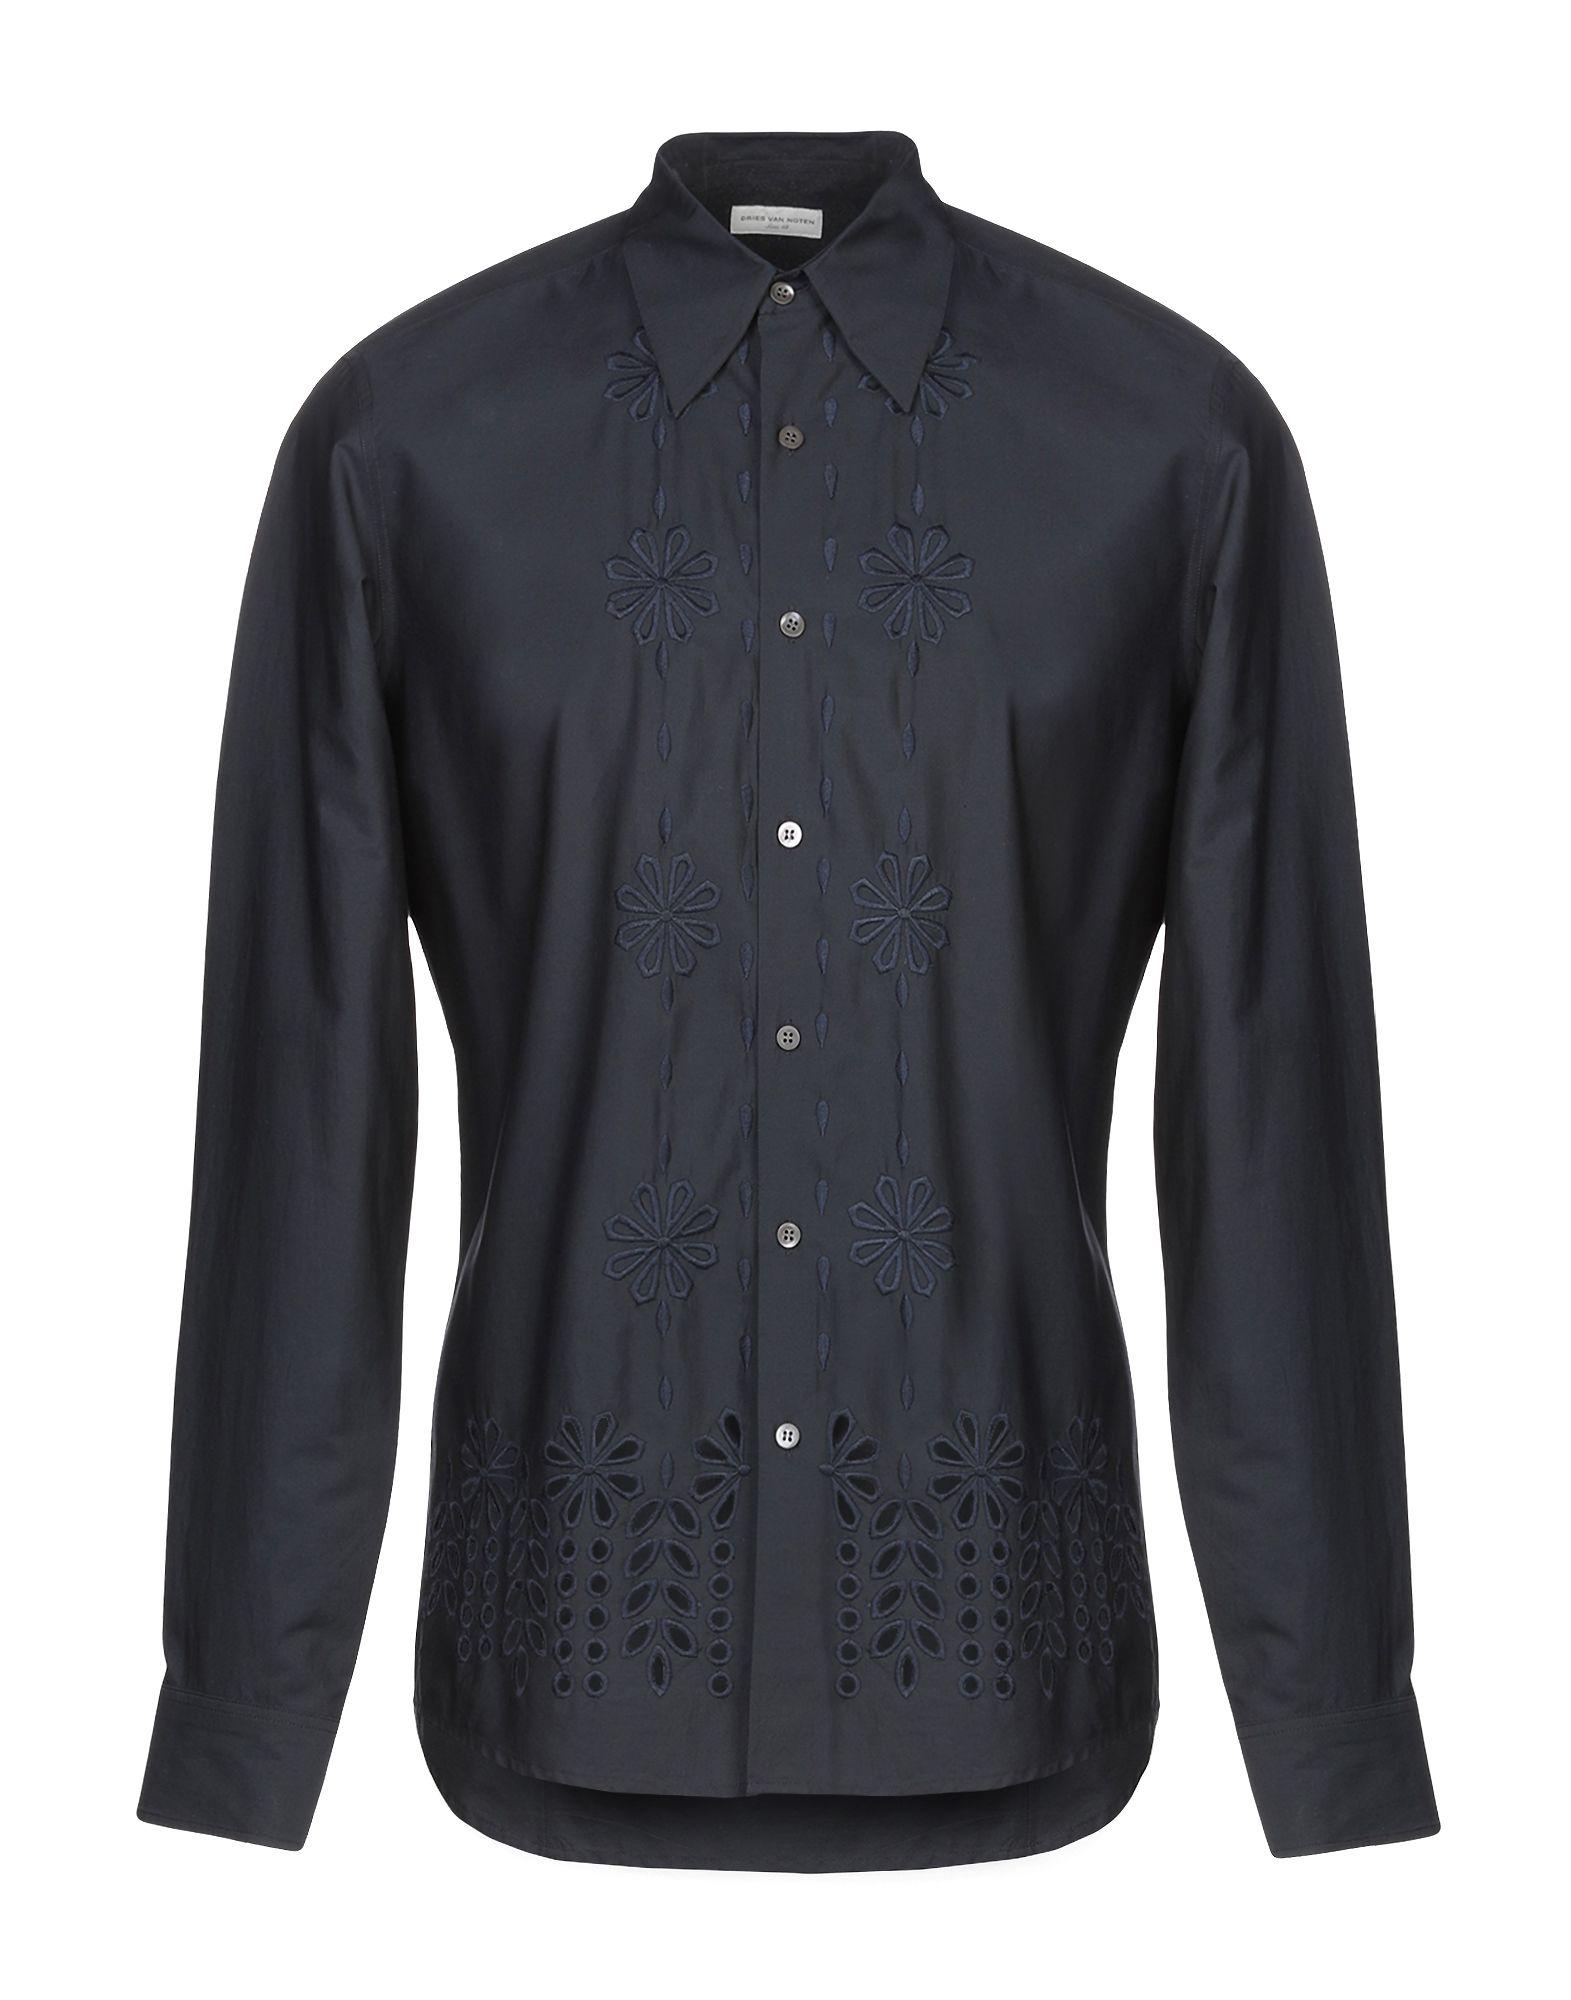 Dries Van Noten Cotton Shirt in Black for Men - Lyst